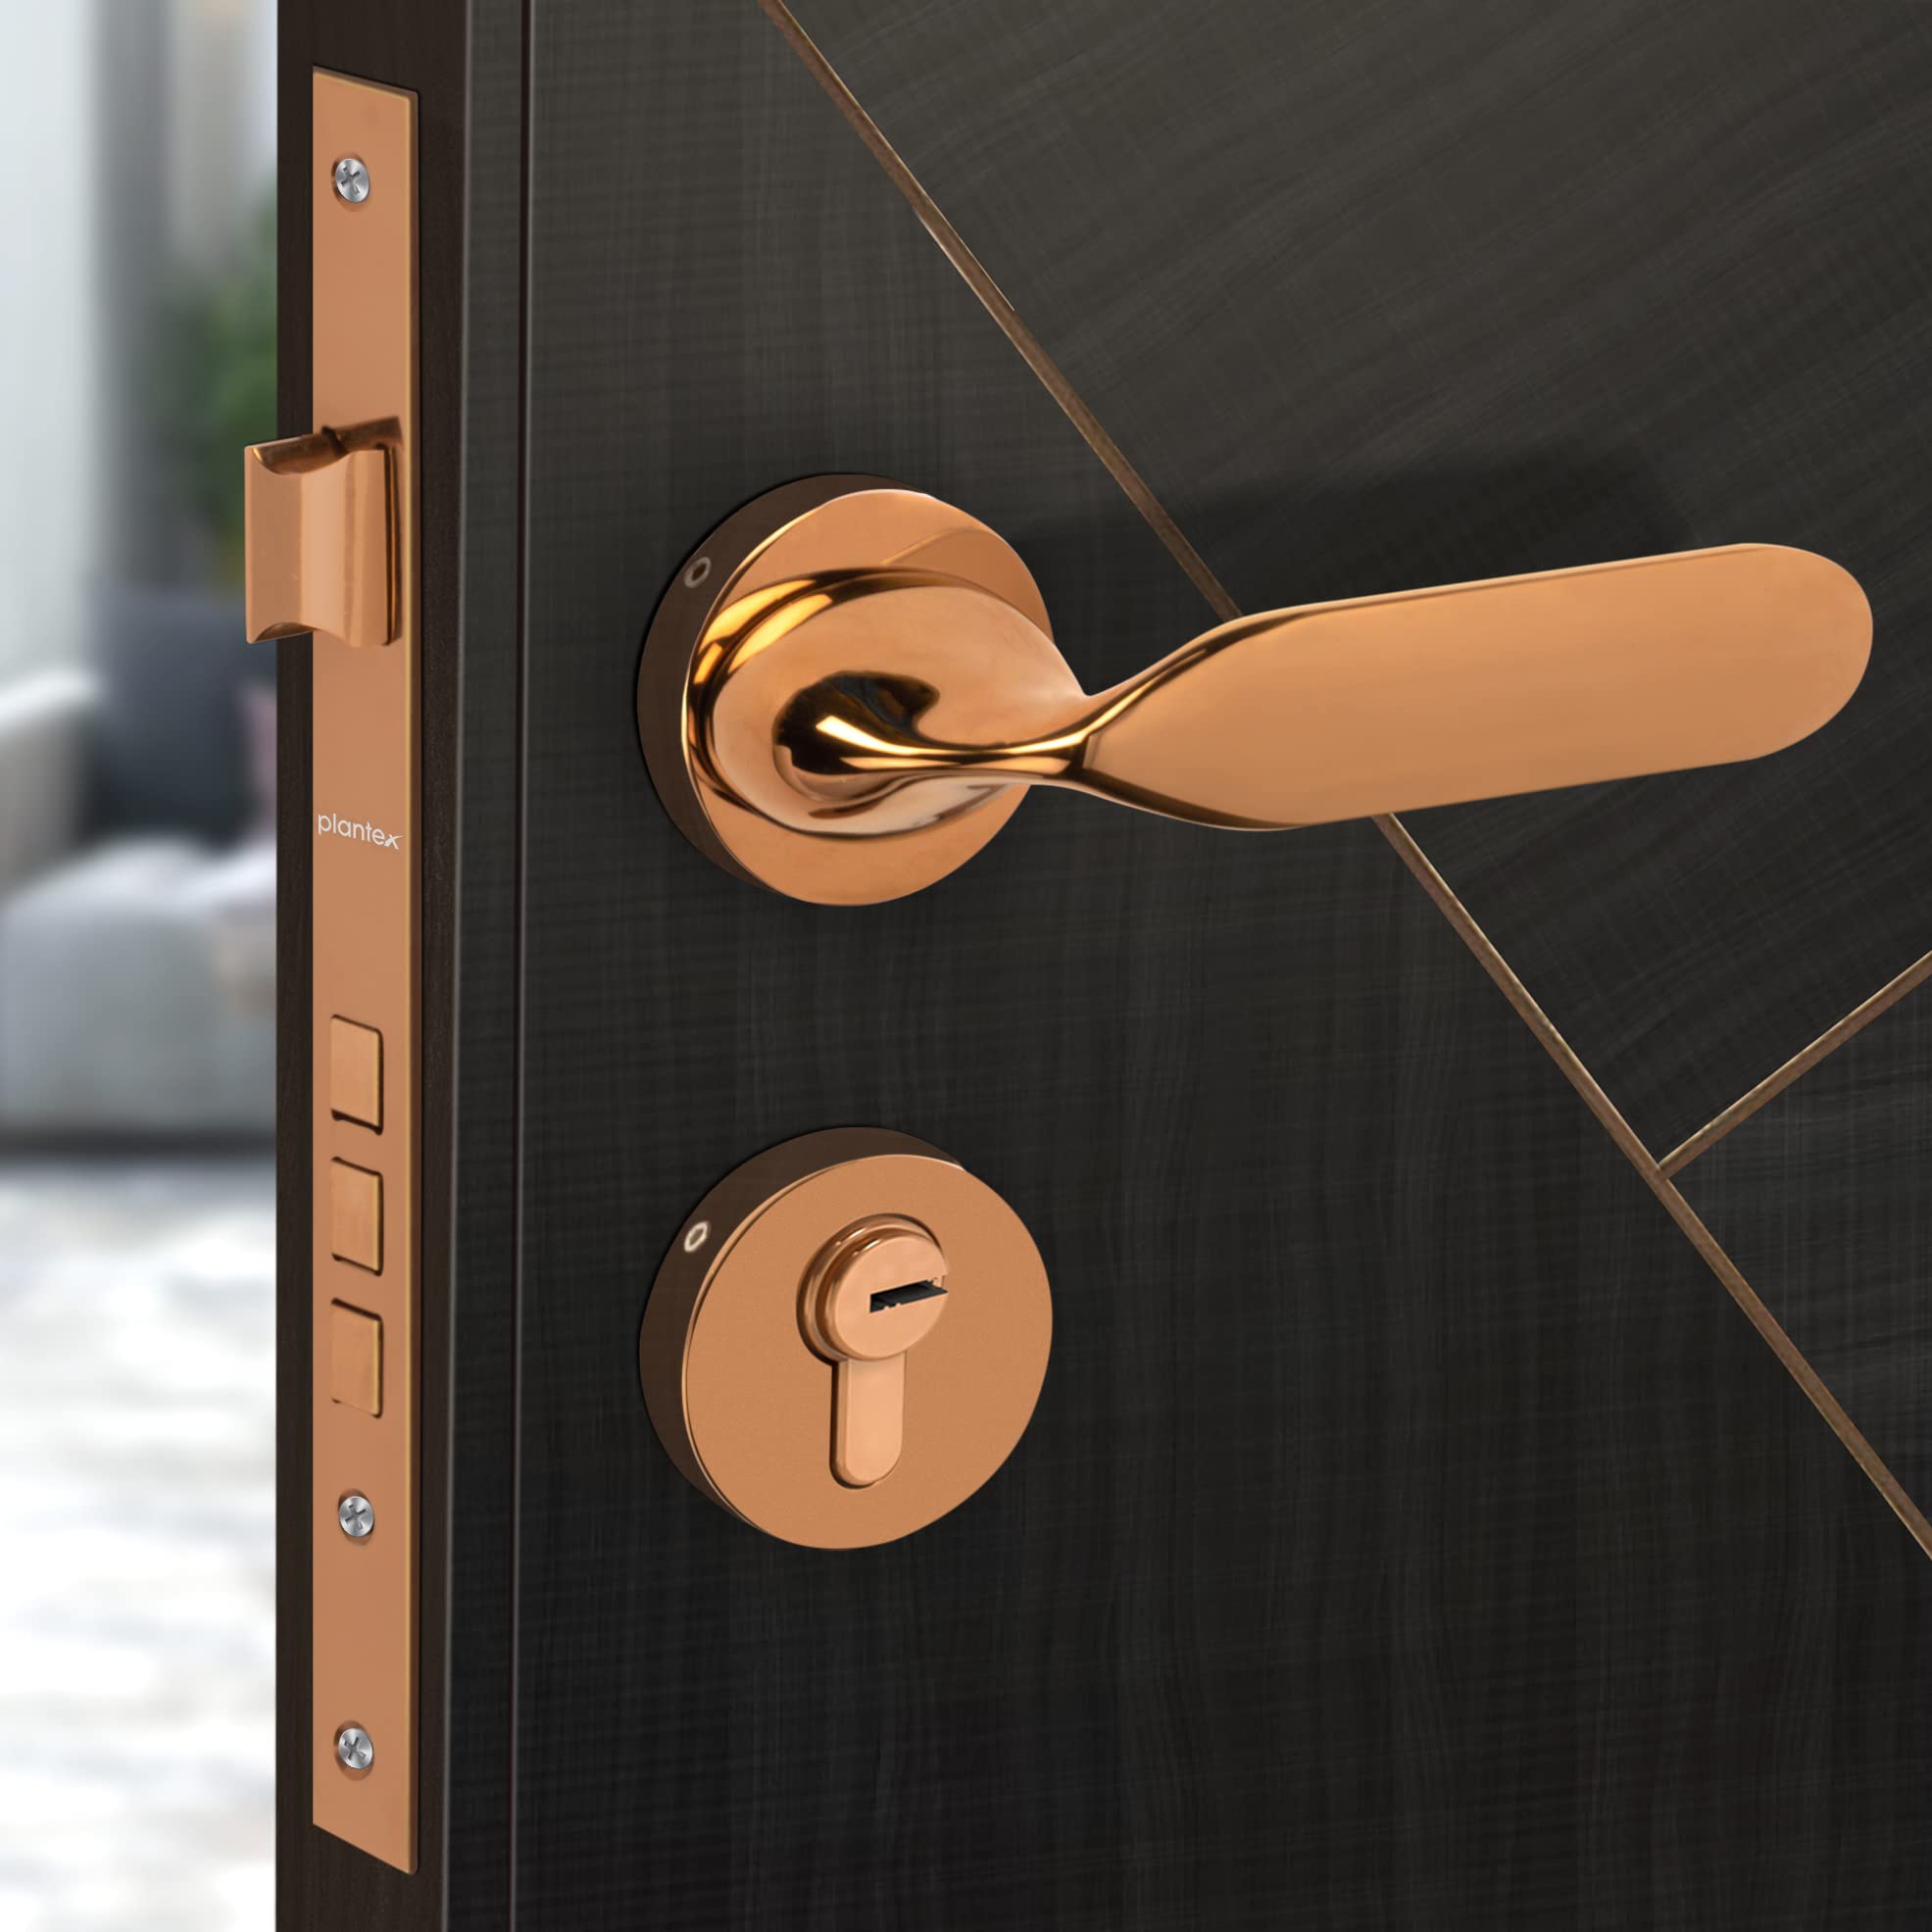 Plantex Heavy Duty Door Lock - Main Door Lock Set with 3 Keys/Mortisec Door Lock for Home/Office/Hotel (7106 - PVD Choco)